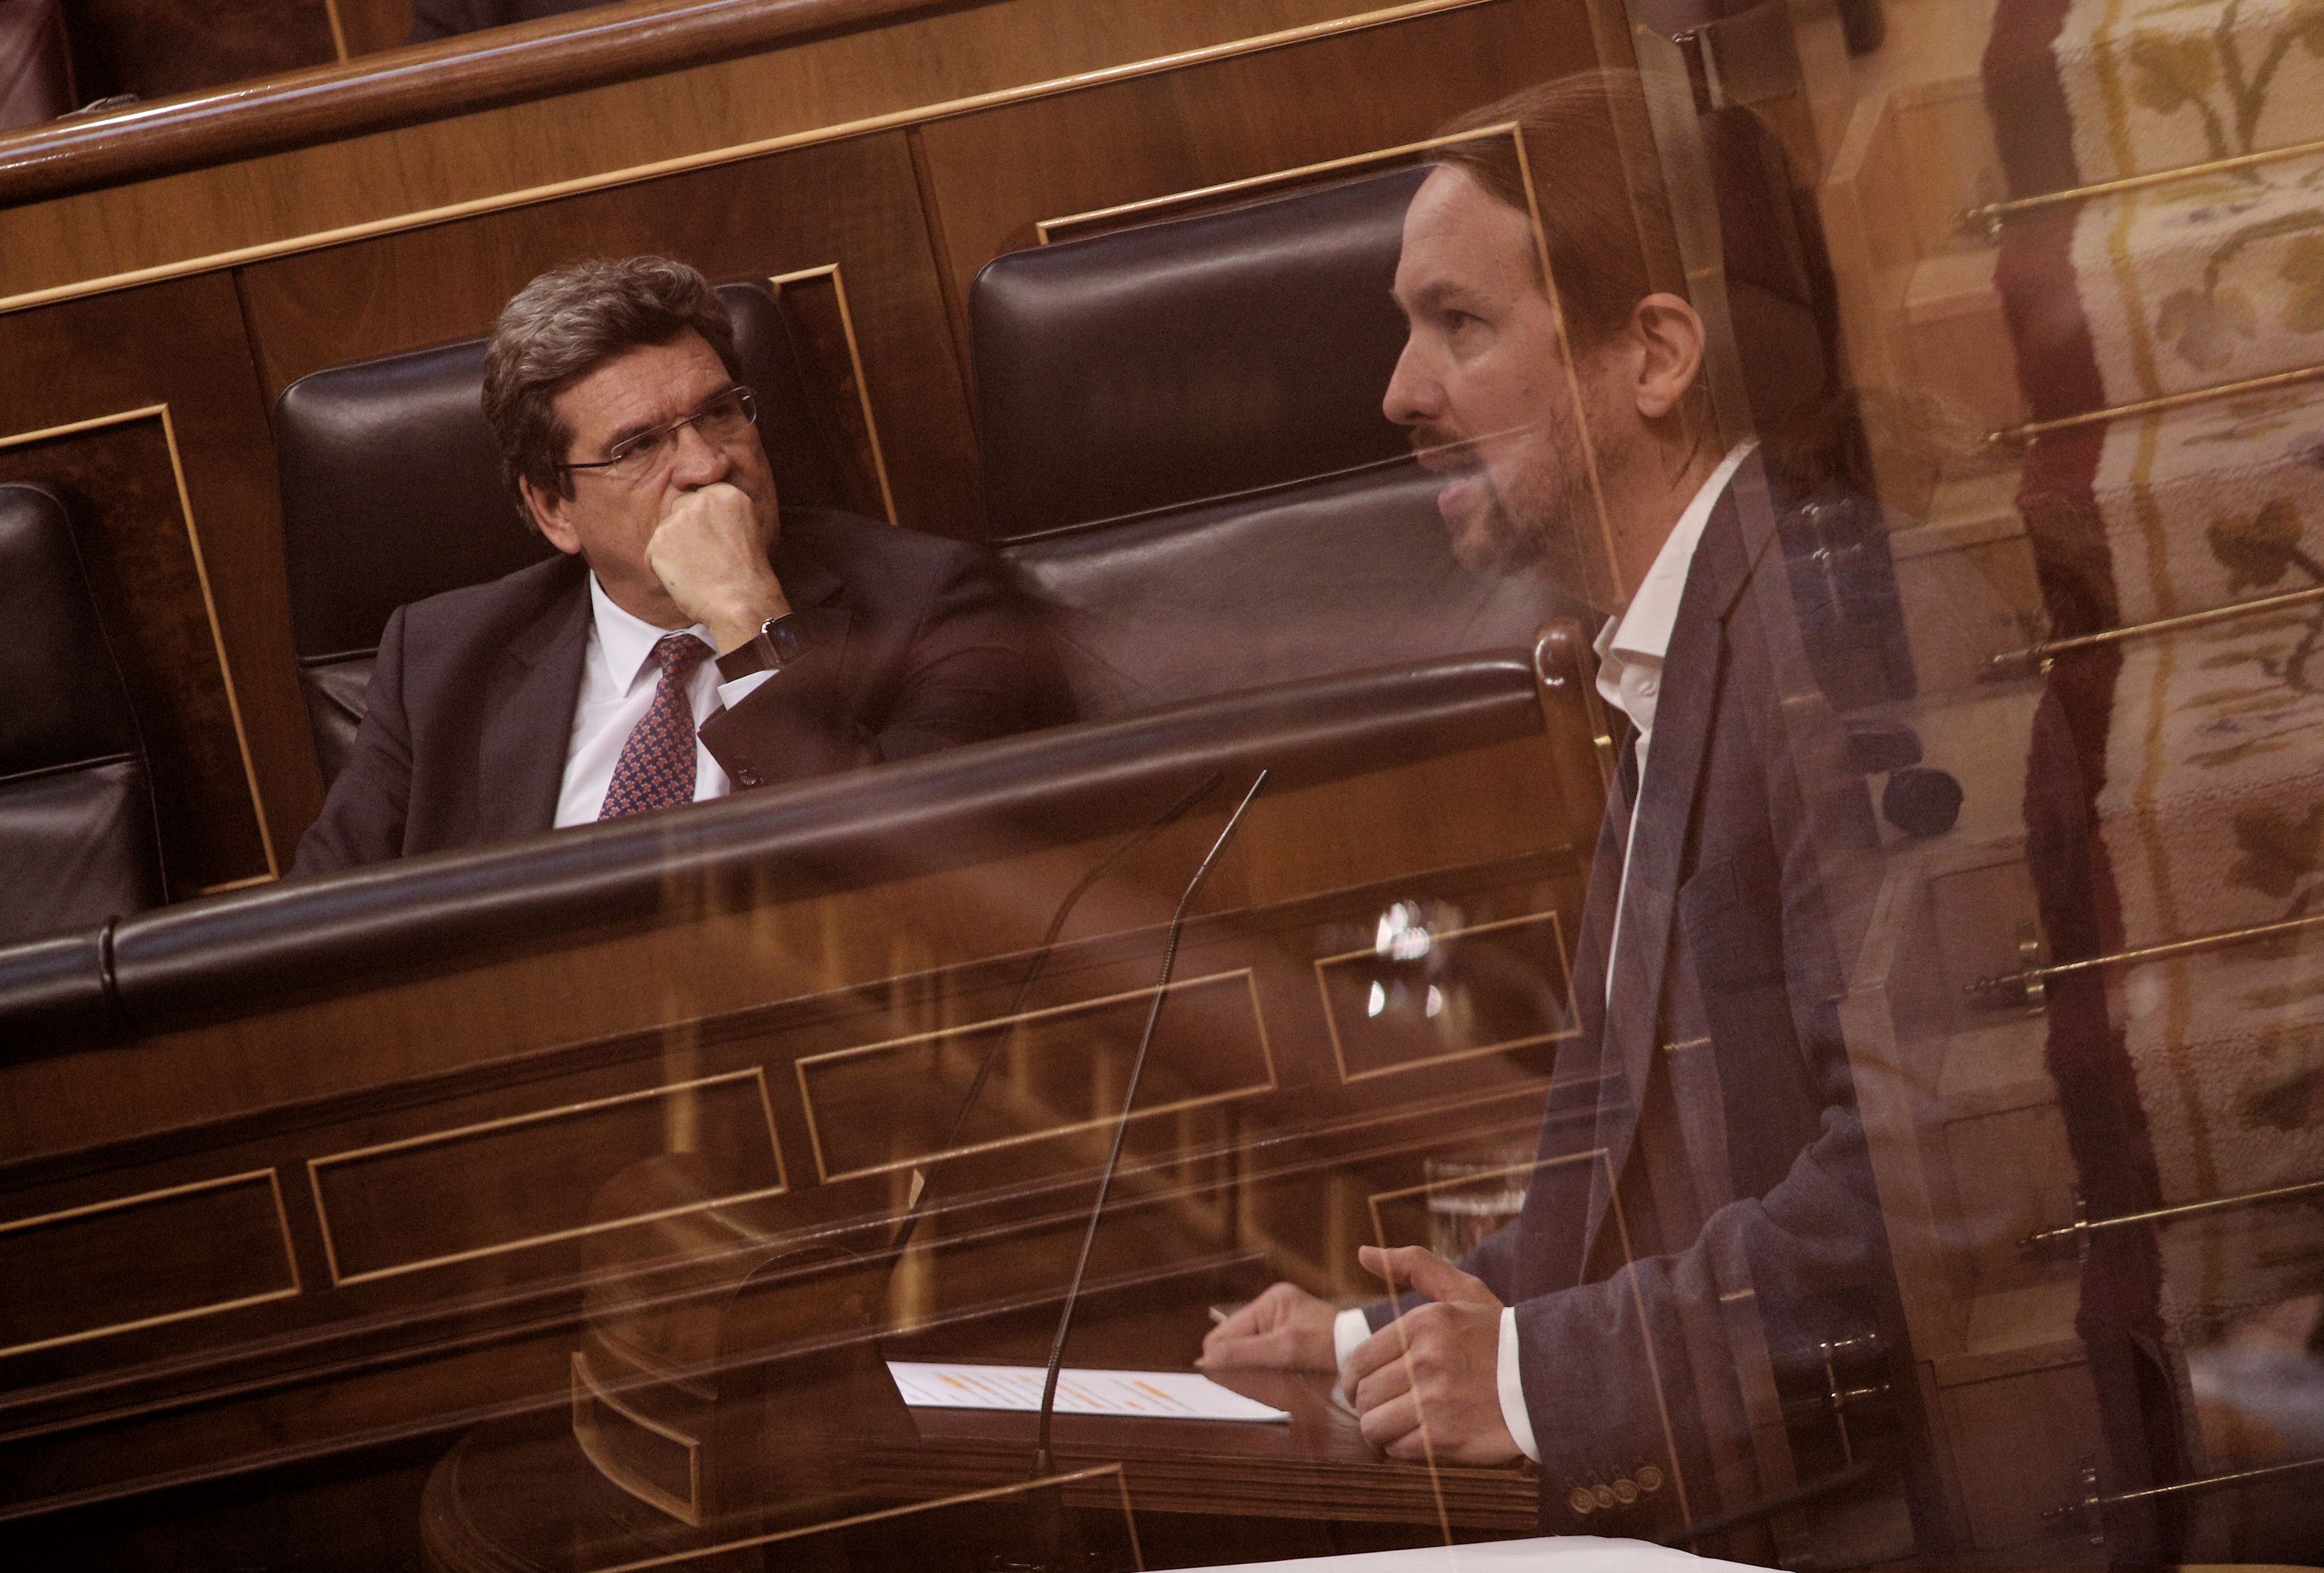 El zasca del ministro Escrivá a Pablo Iglesias en directo